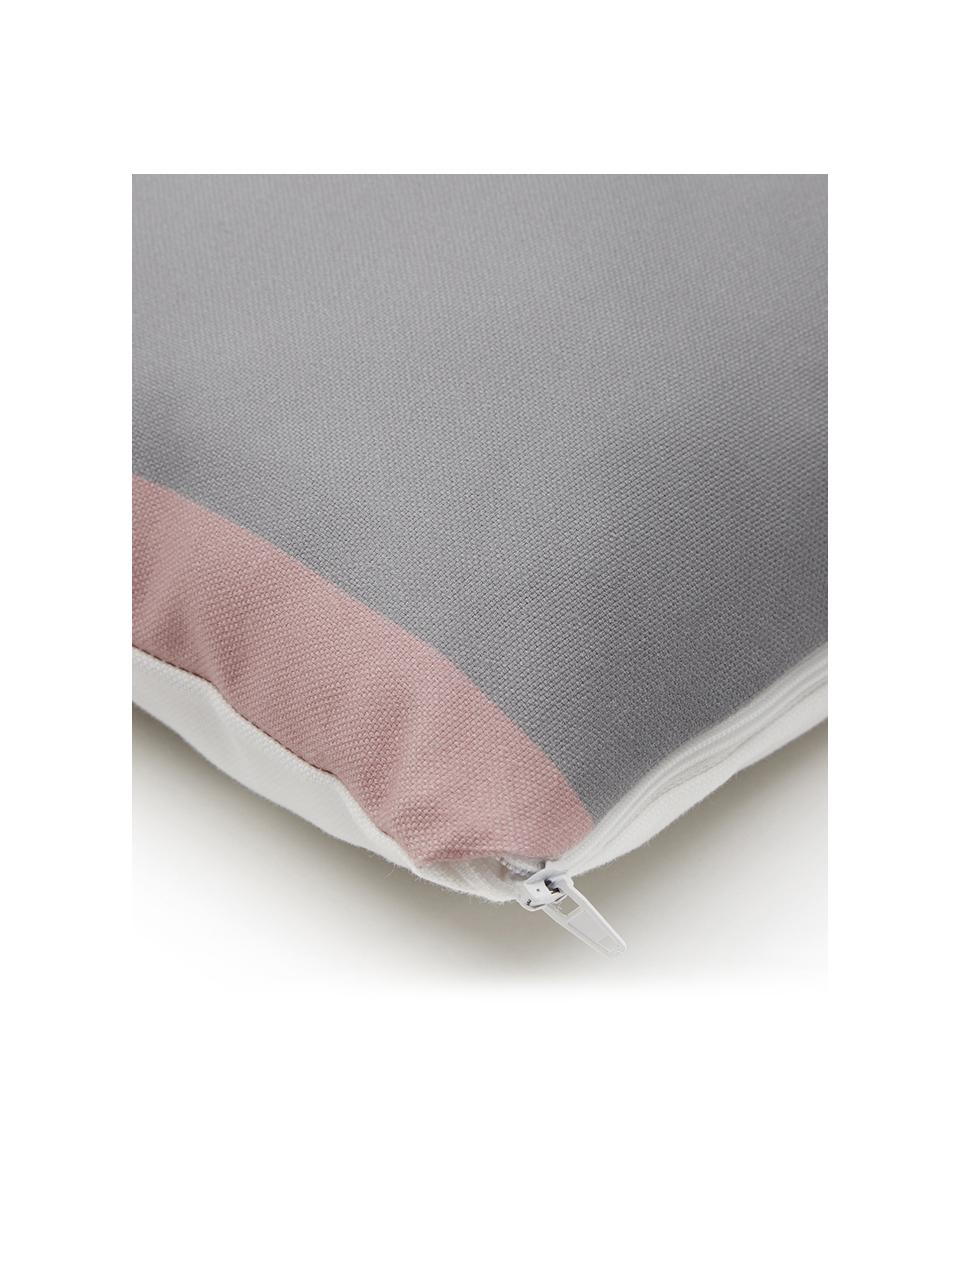 Federa arredo con forme geometriche Line, Tessuto: Panama, Bianco, grigio, rosa, rosso scuro, arancione, blu scuro, Larg. 40 x Lung. 40 cm